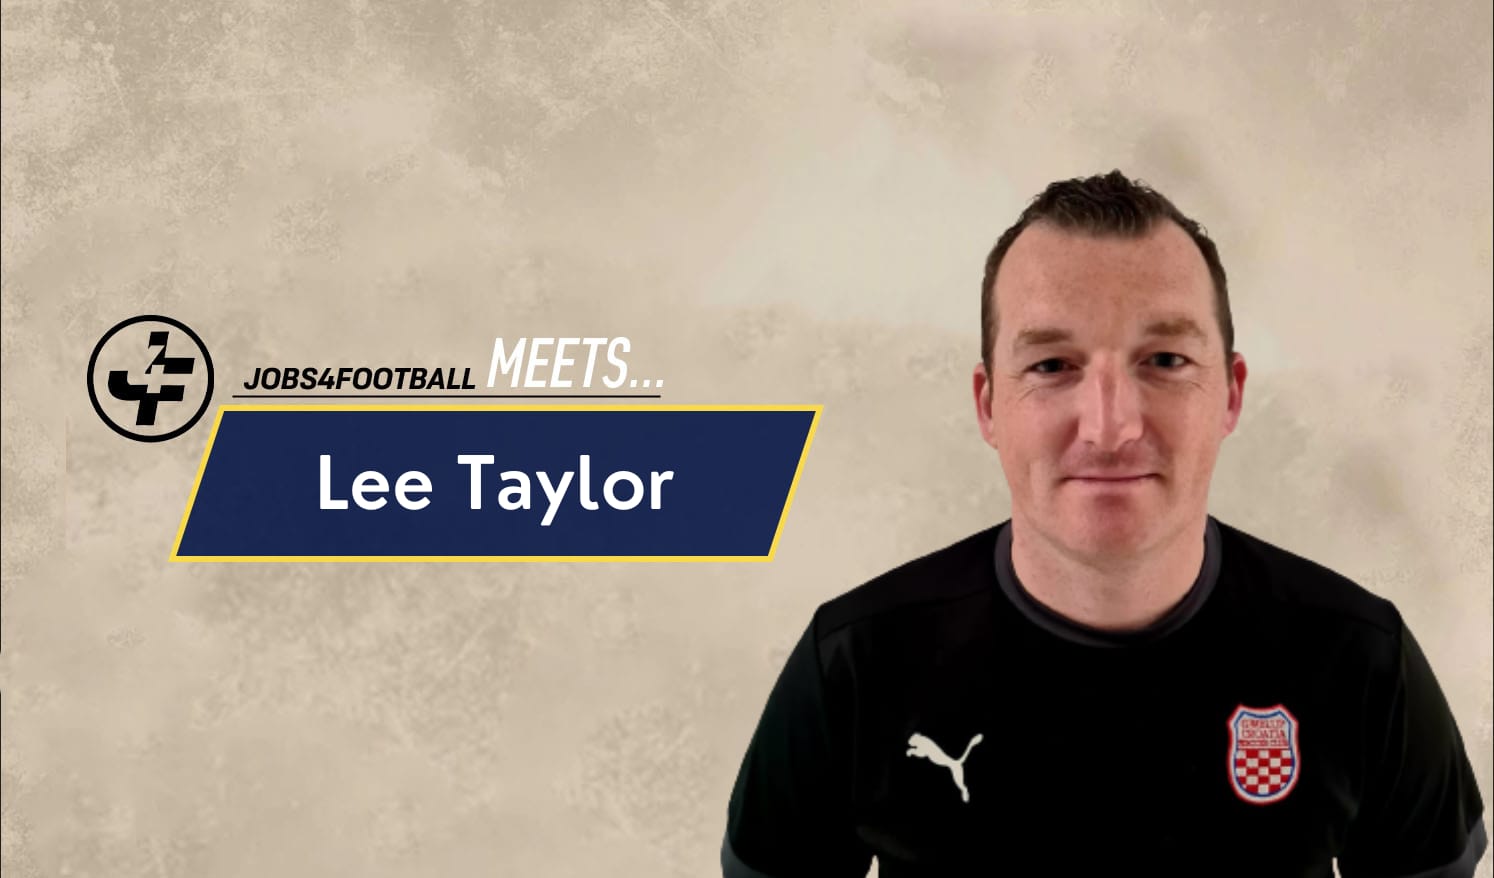 Jobs4Football meets Lee Taylor